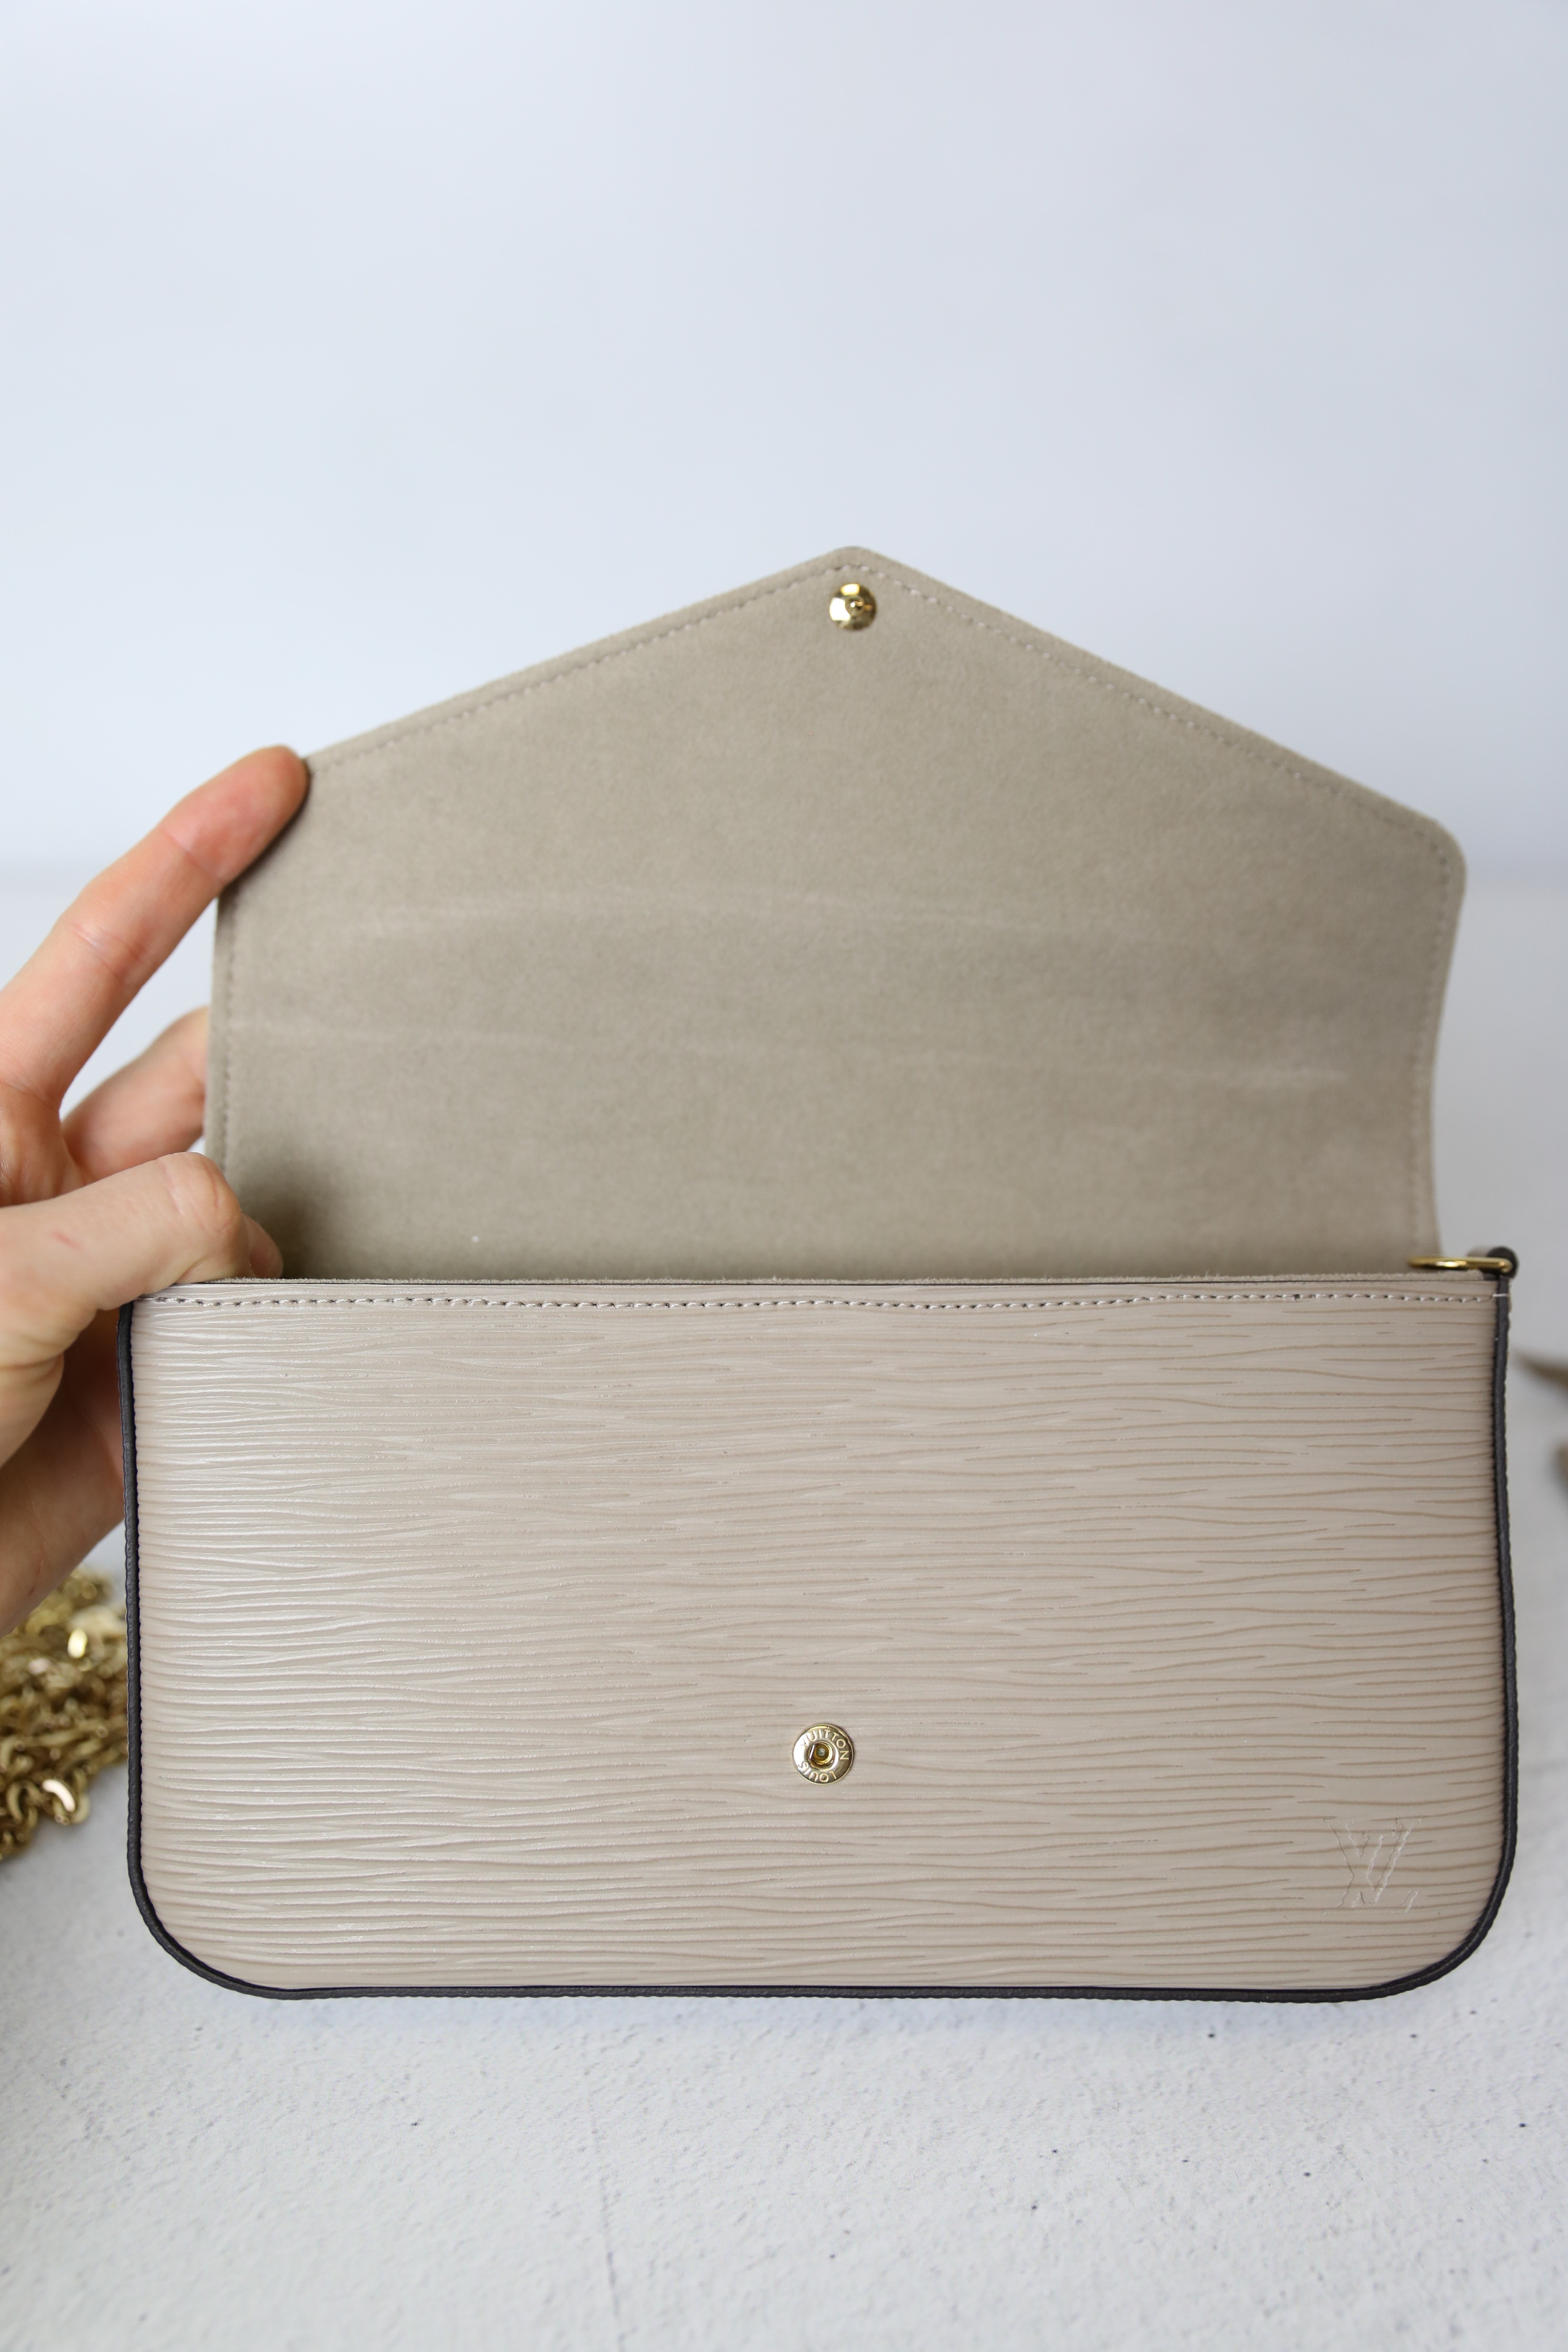 Louis Vuitton Galet Epi Leather Pochette Felicie Bag